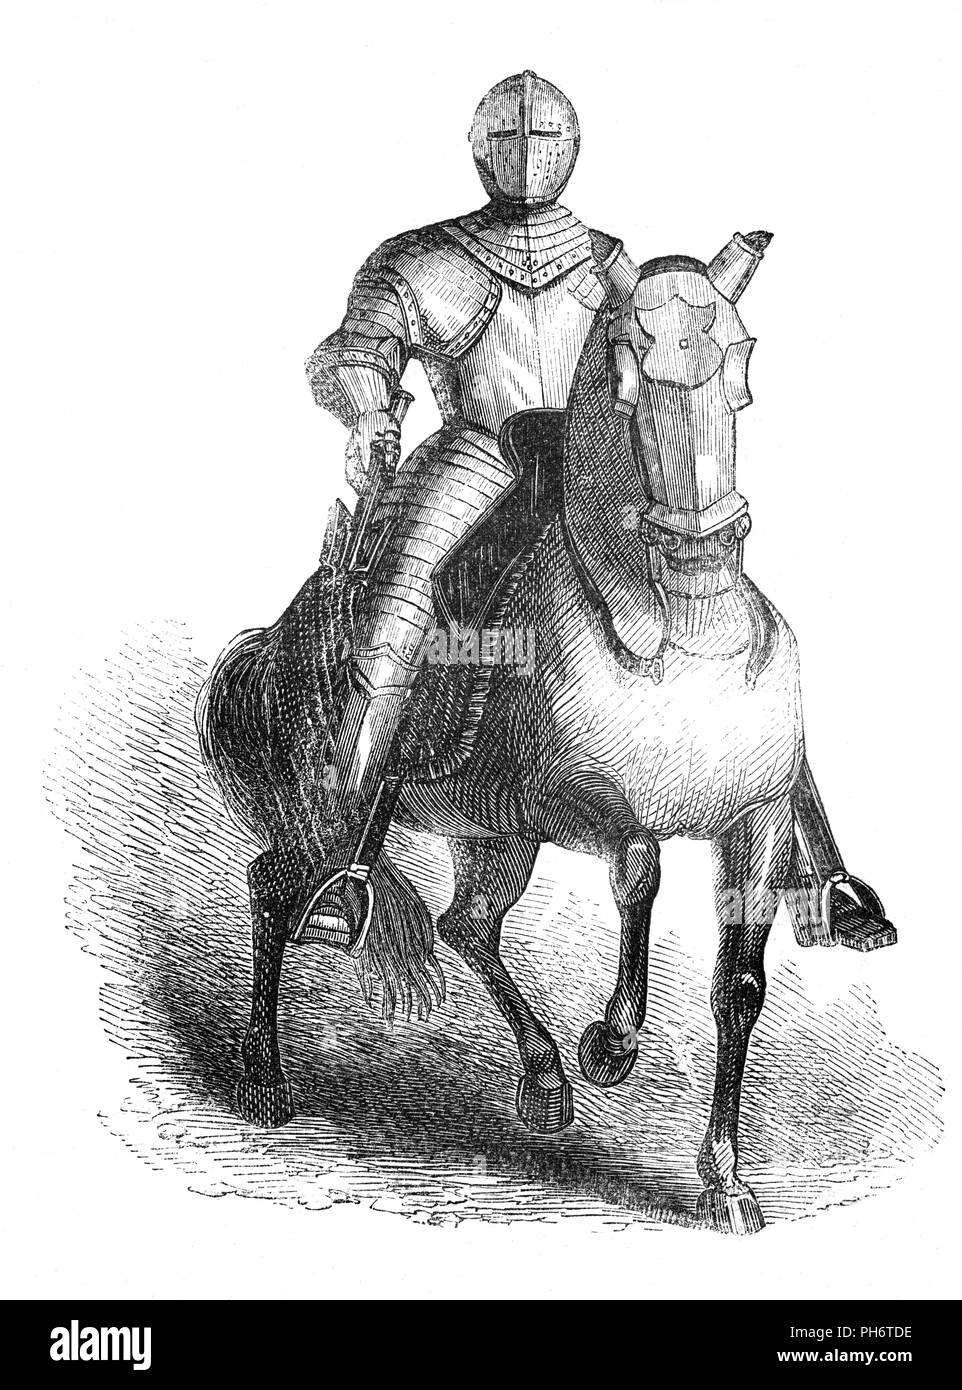 Un ritratto di Orazio vere a cavallo in Cap-un-pie corazza. Egli è stato primo Baron vere di Tilbury (1565-1635), un inglese leader militare durante gli ottanta anni di guerra e la guerra dei trenta anni e trattenuto il post di Master-General dell'artiglieria da 1629 fino al 1634. Foto Stock